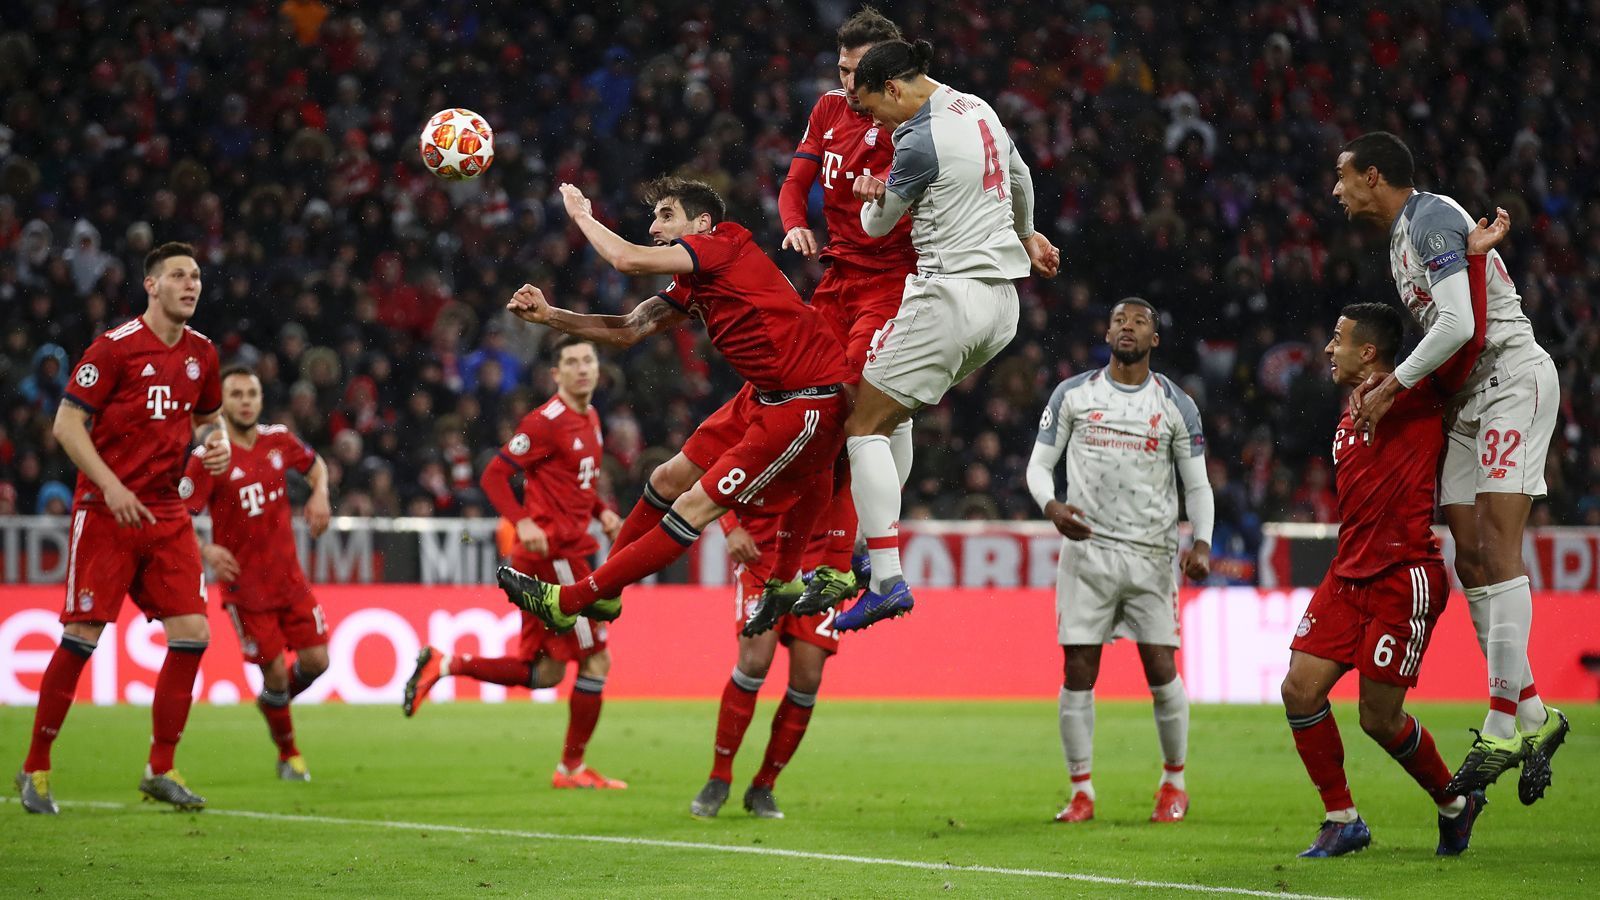 
                <strong>Einzelkritik FC Bayern vs. Liverpool</strong><br>
                Mit einer 1:3-Niederlage gegen den FC Liverpool scheidet der FC Bayern bereits im Achtelfinale der Champions League aus. ran.de bewertet das Spiel der Bayern-Stars.
              